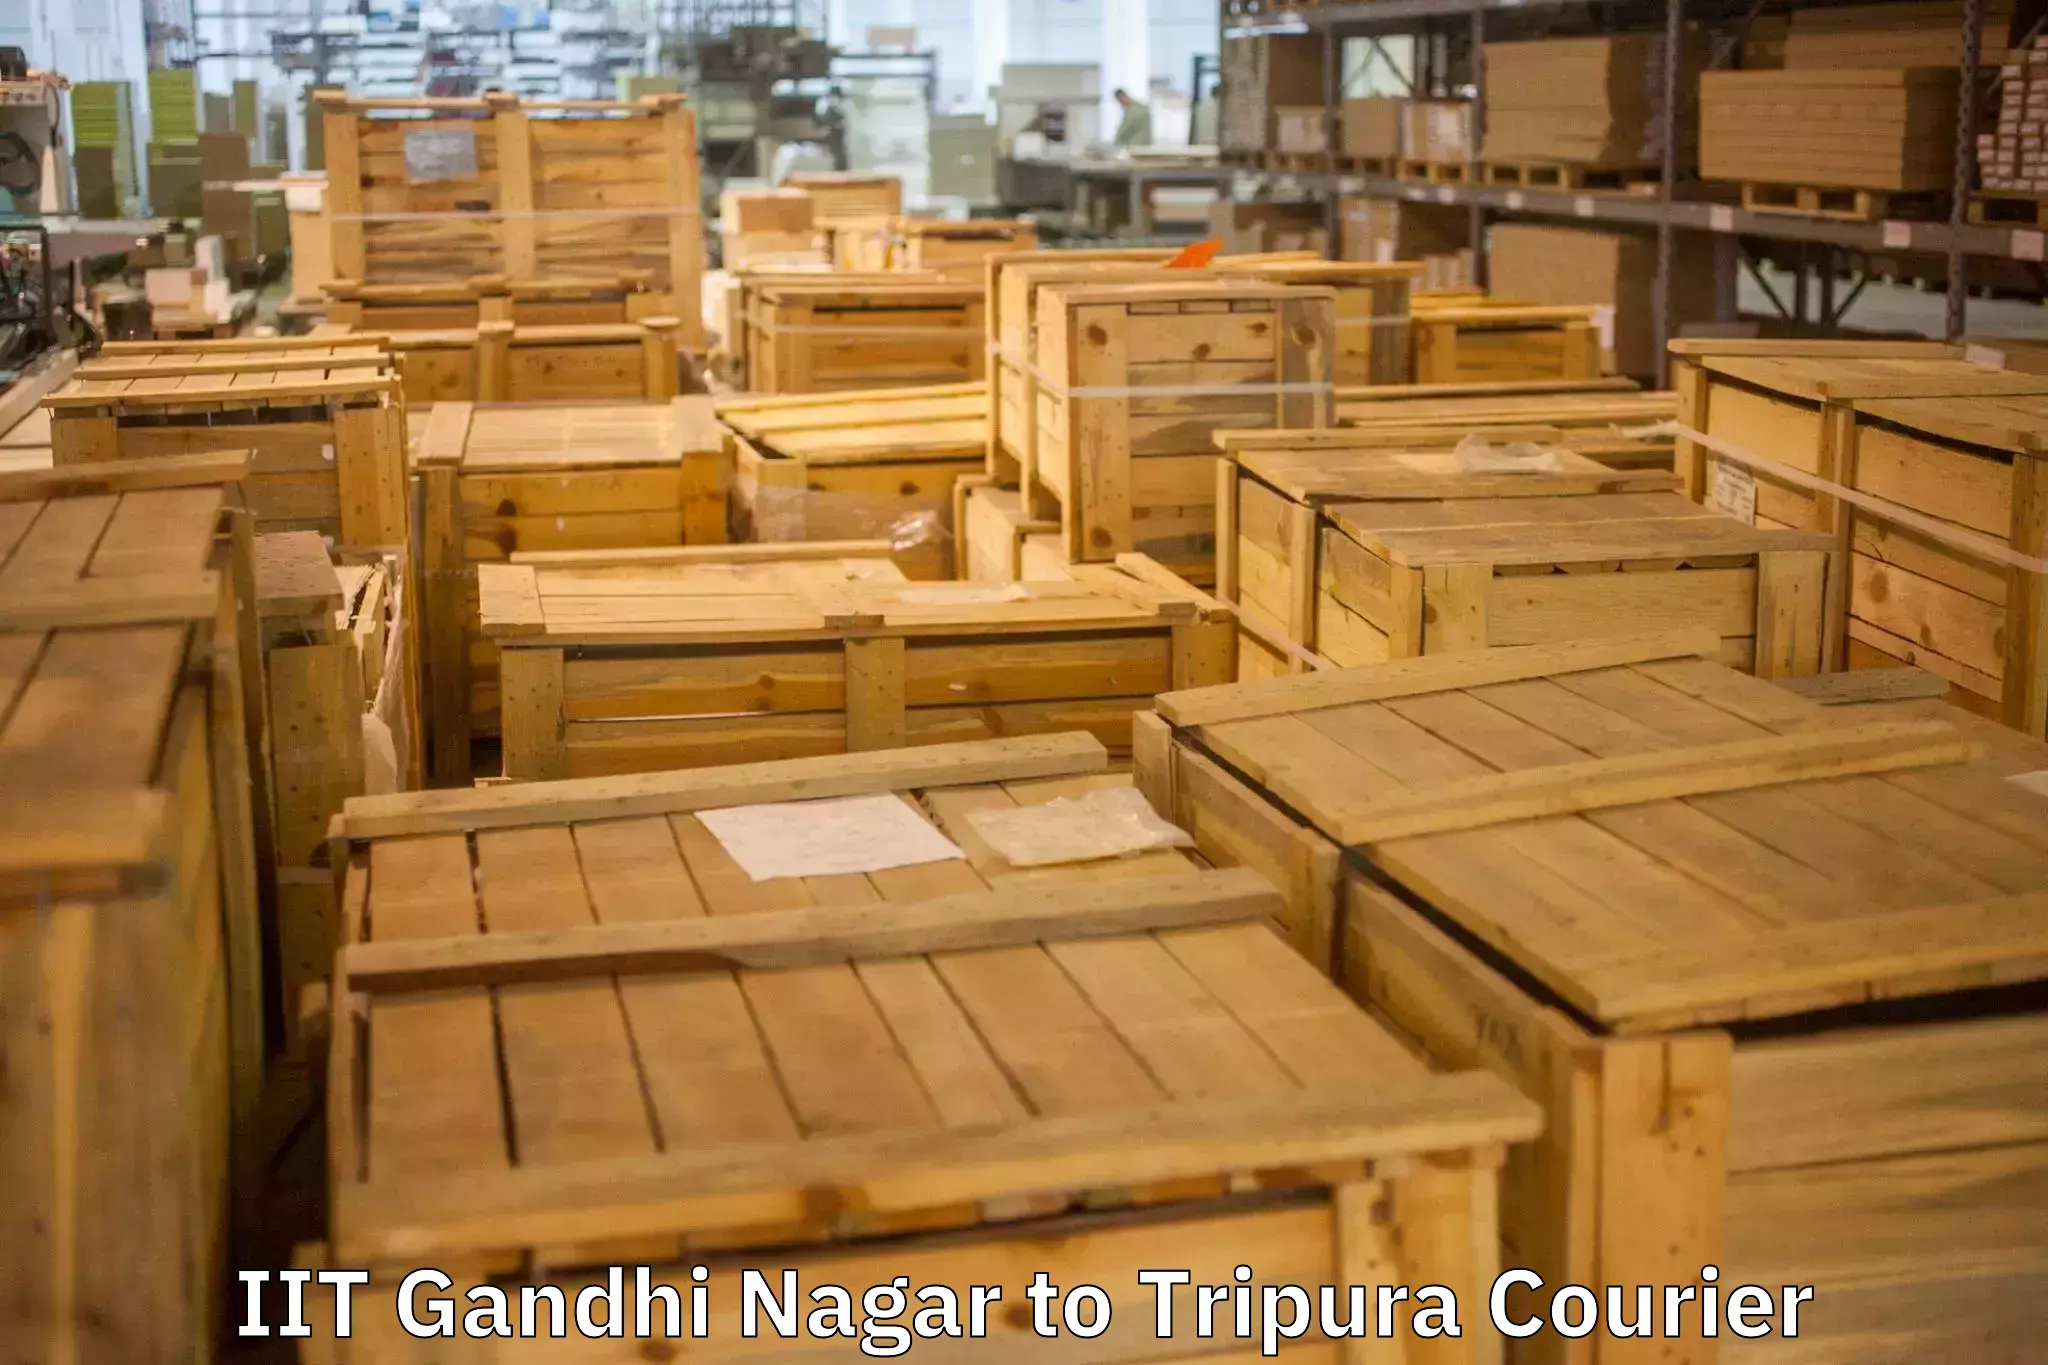 Professional packing and transport IIT Gandhi Nagar to Aambasa